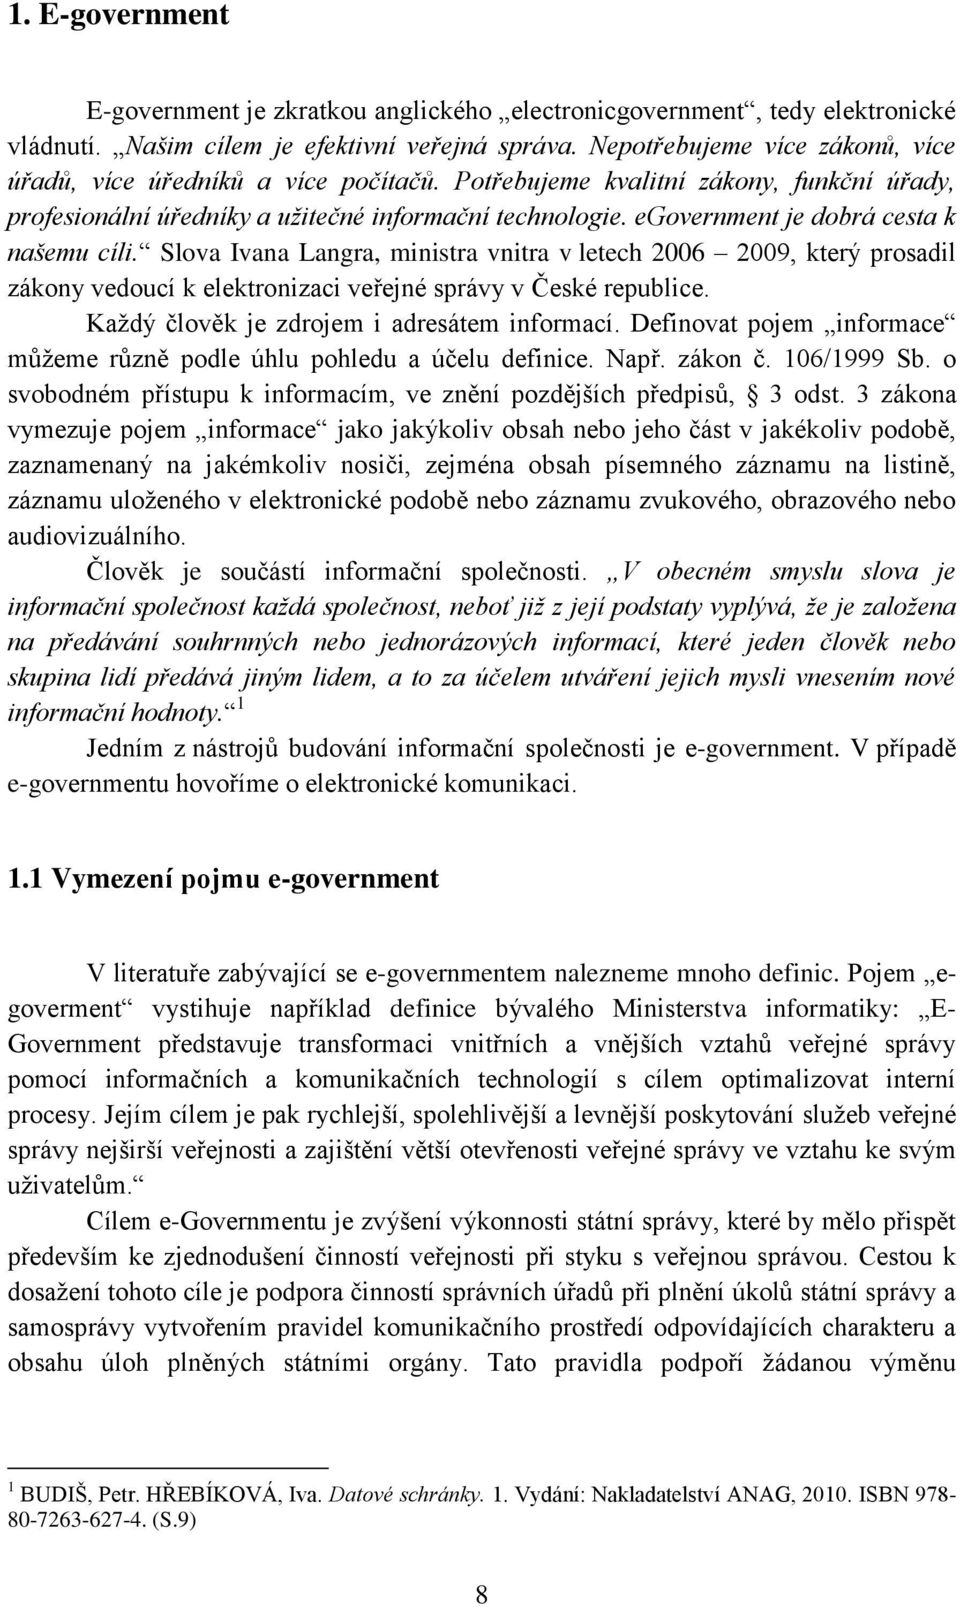 egovernment je dobrá cesta k našemu cíli. Slova Ivana Langra, ministra vnitra v letech 2006 2009, který prosadil zákony vedoucí k elektronizaci veřejné správy v České republice.